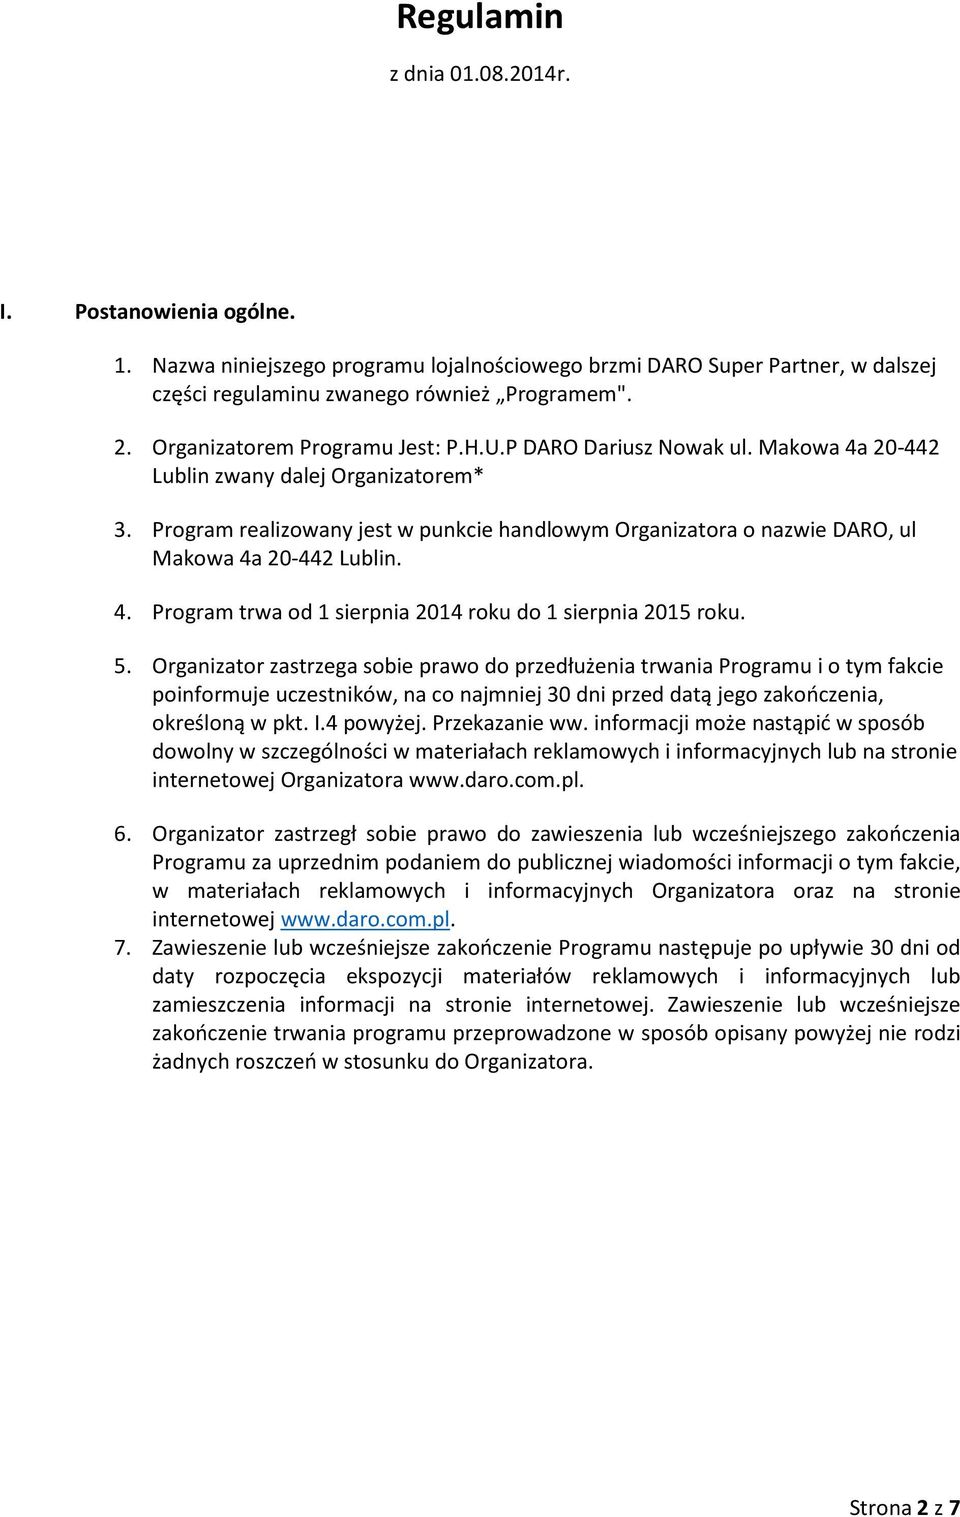 Program realizowany jest w punkcie handlowym Organizatora o nazwie DARO, ul Makowa 4a 20-442 Lublin. 4. Program trwa od 1 sierpnia 2014 roku do 1 sierpnia 2015 roku. 5.